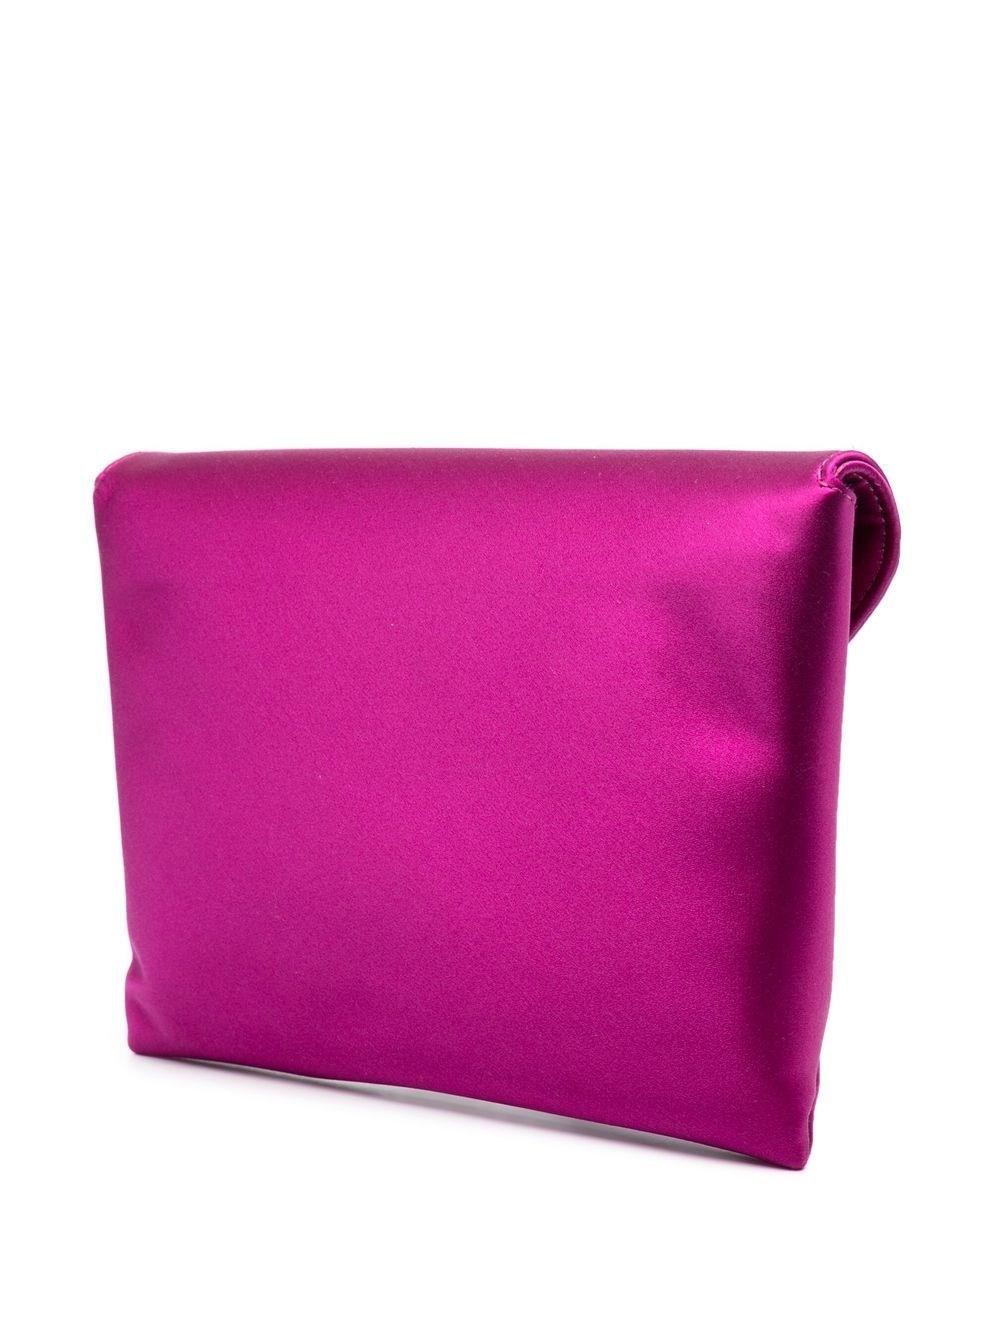 Max Mara Viscose And Silk Satin Clutch Bag in Pink | Lyst